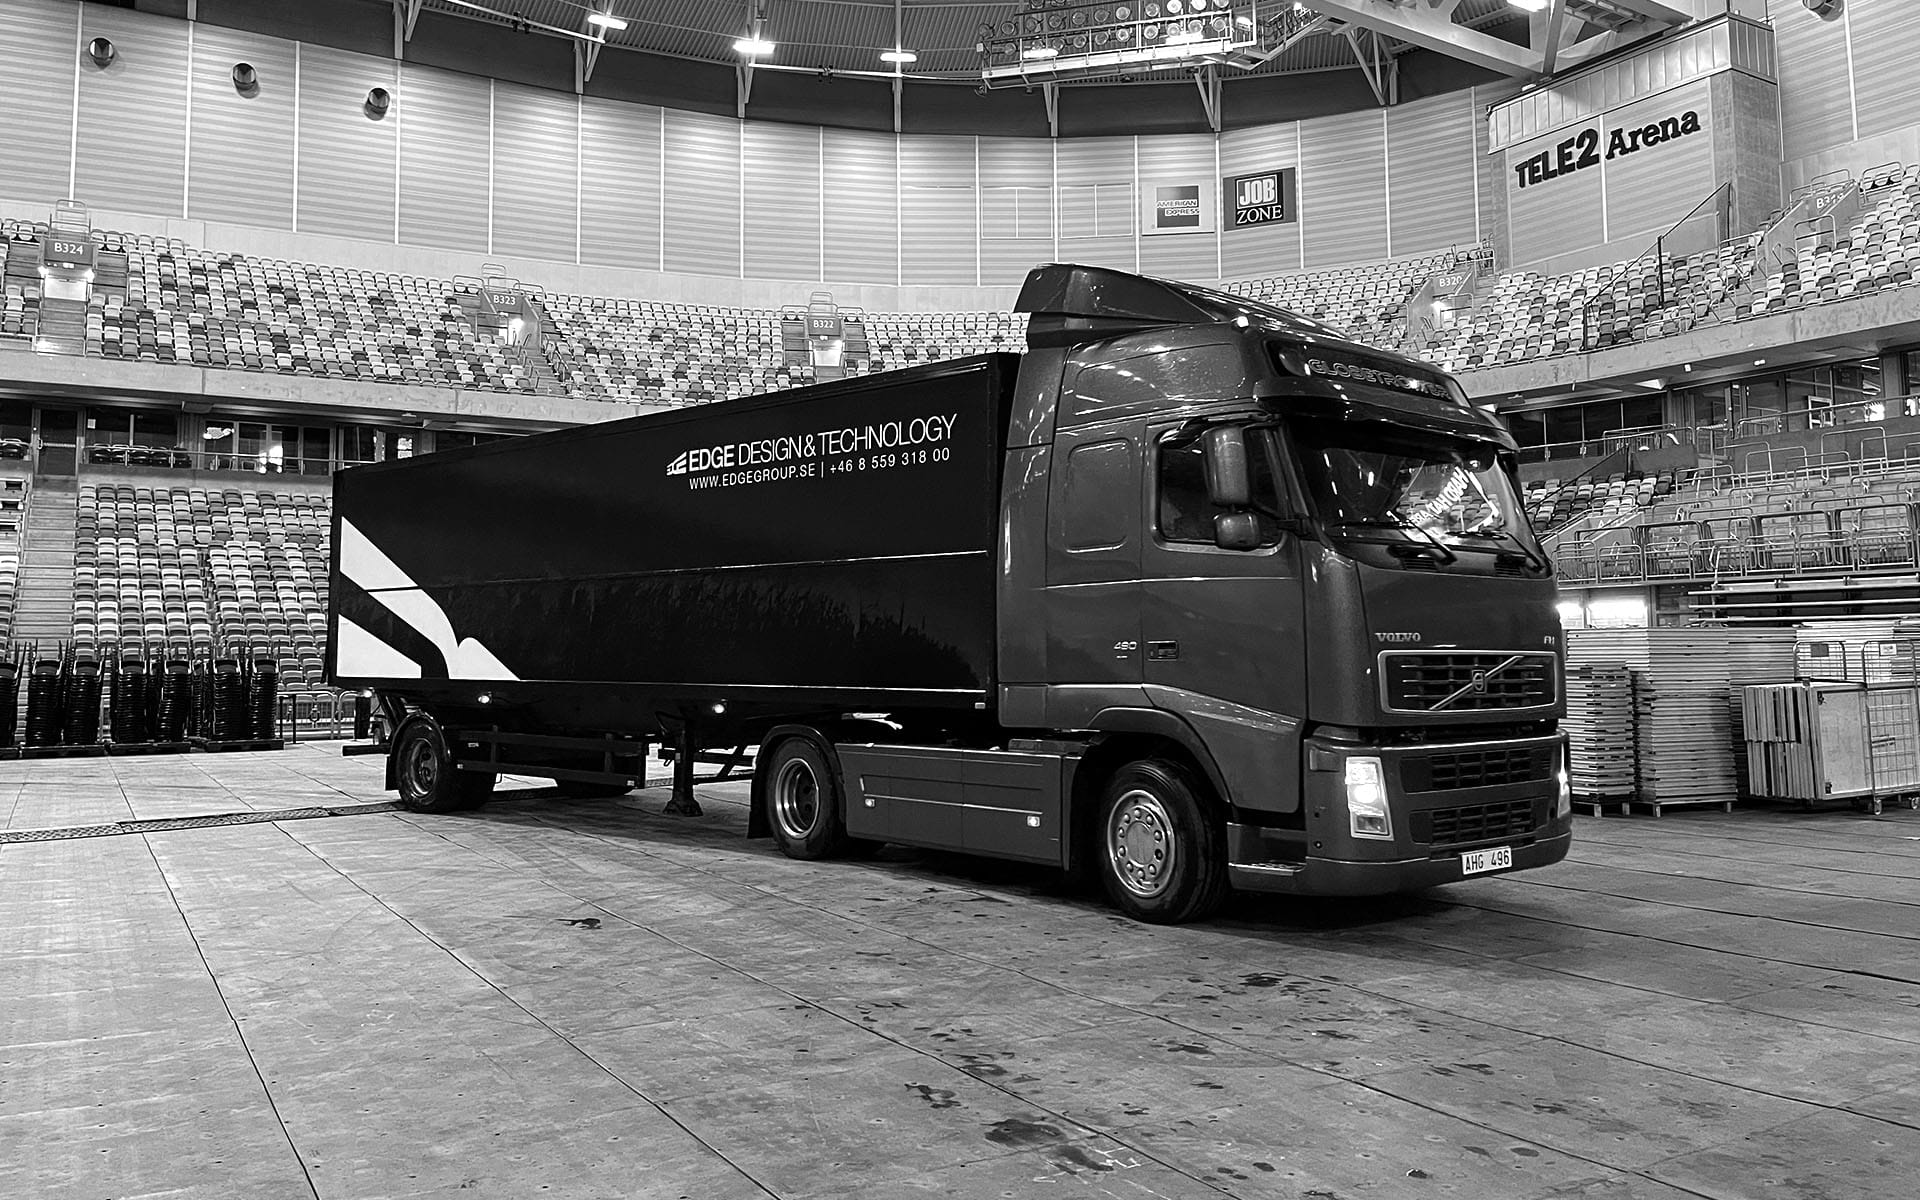 EDGE lastbil levererar design och teknik till event på Tele2 Arena